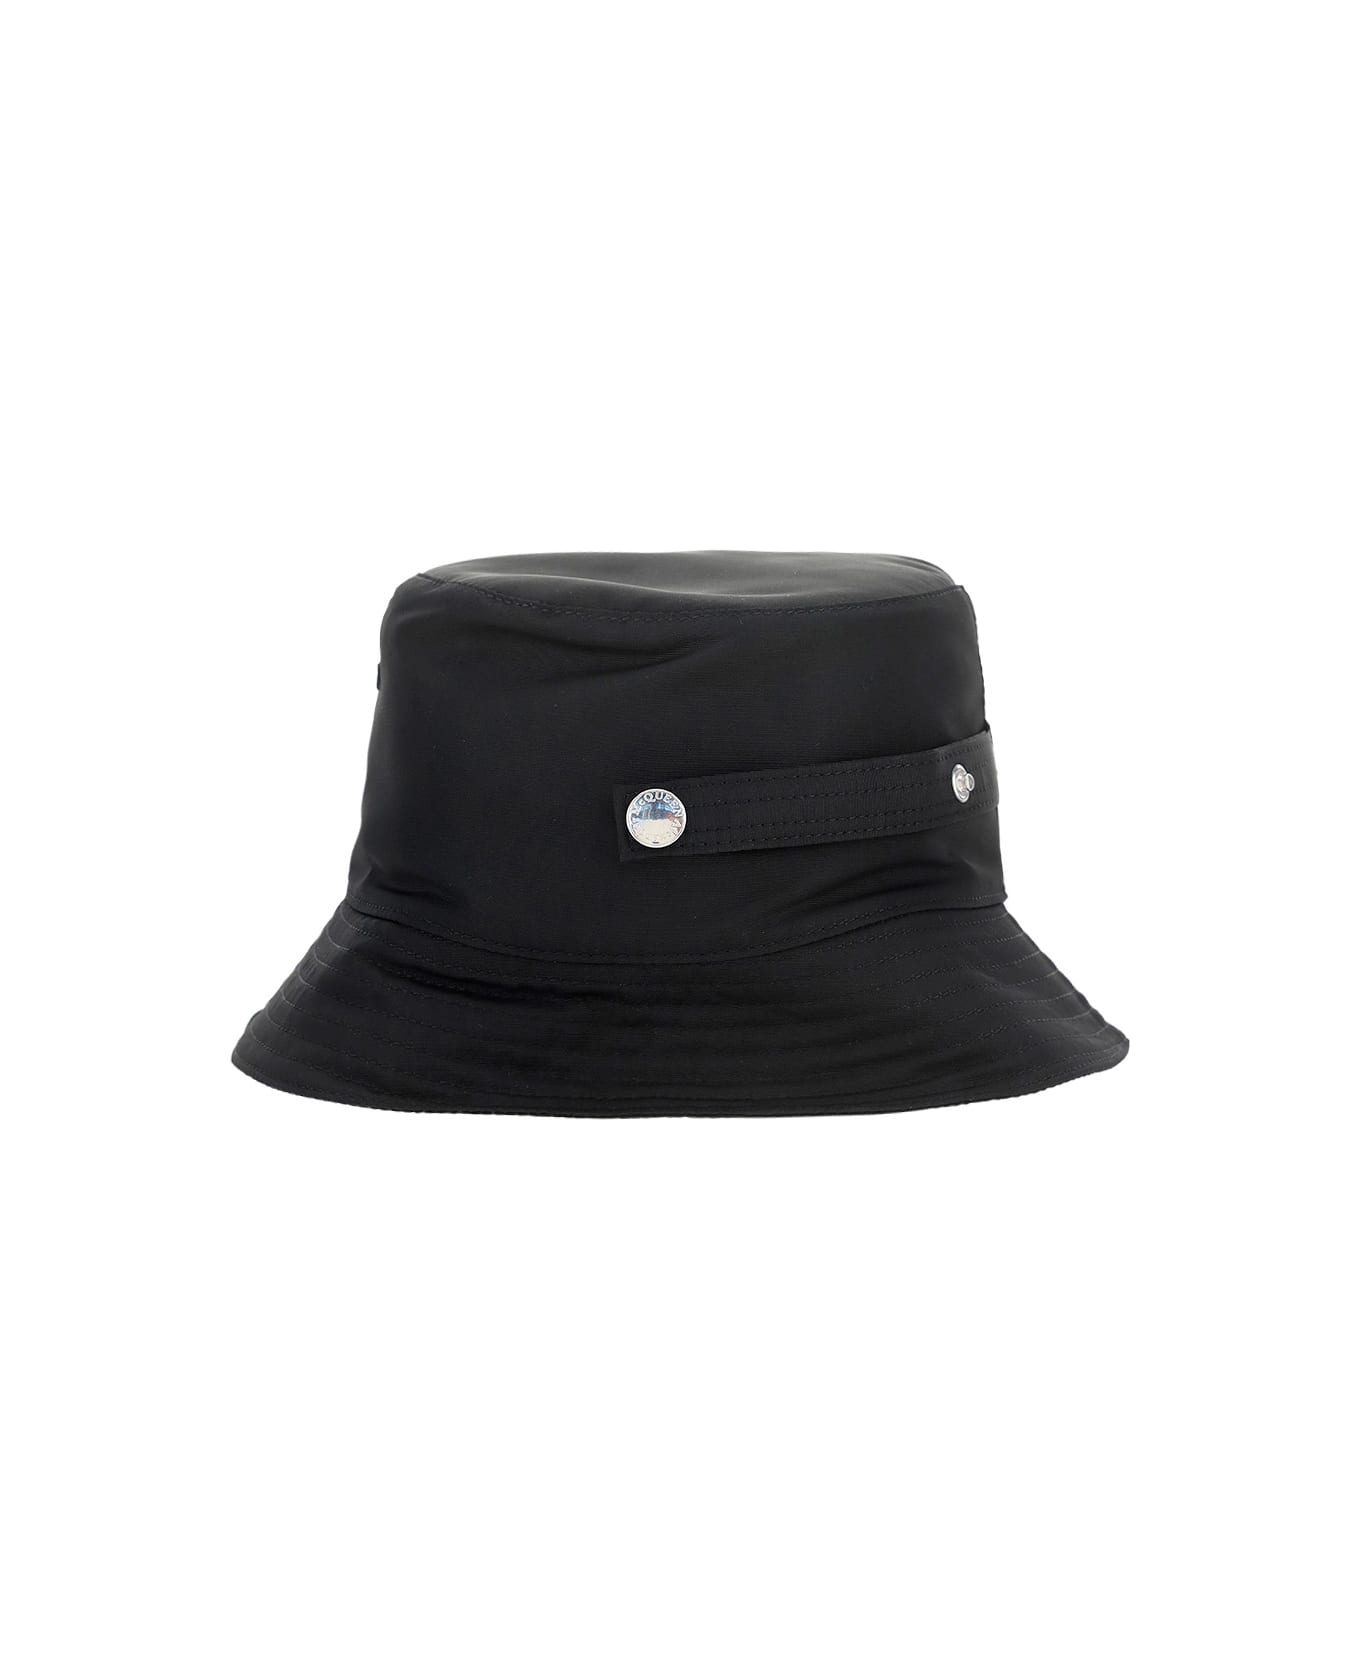 Alexander McQueen Bucket Hat - Black/ivory